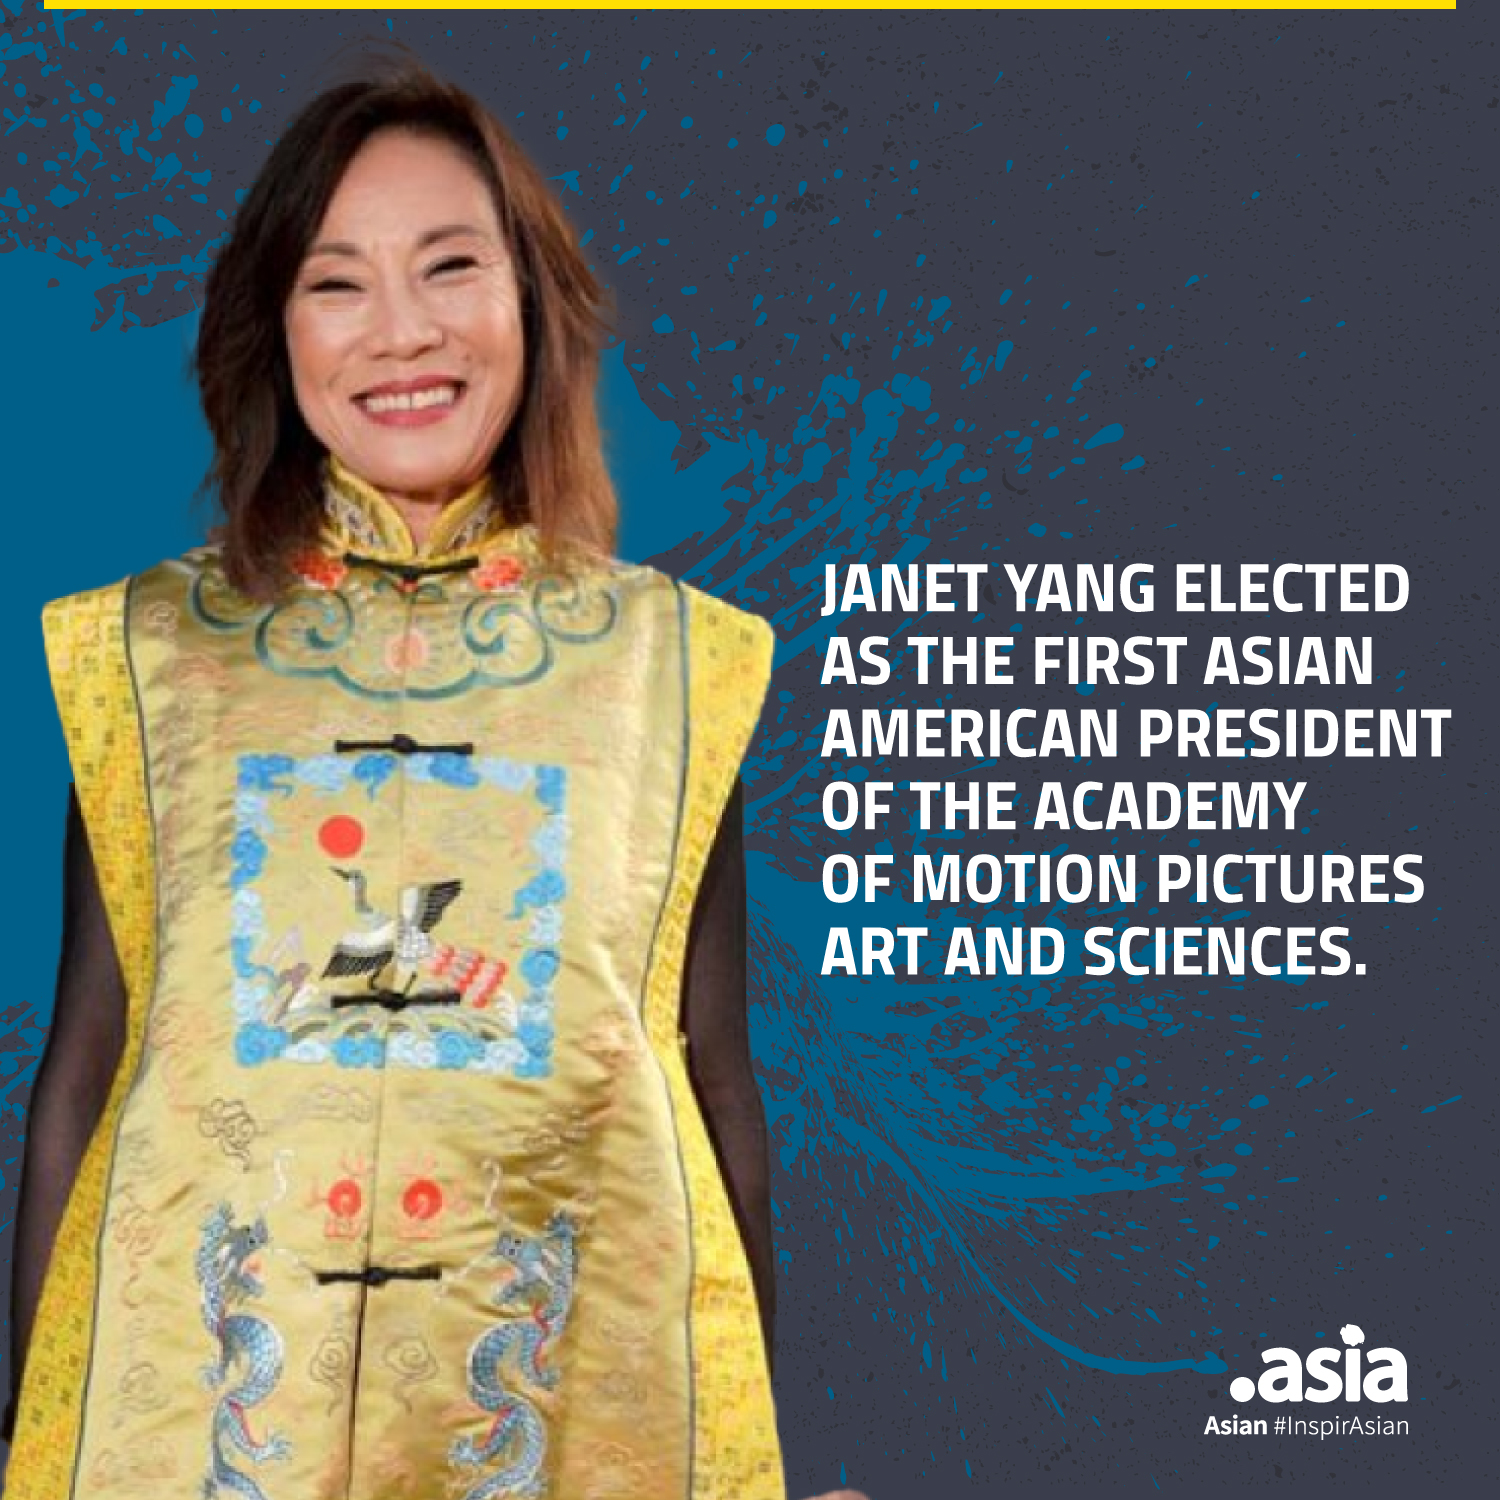 Image: Janet Yang - Academy Awards President